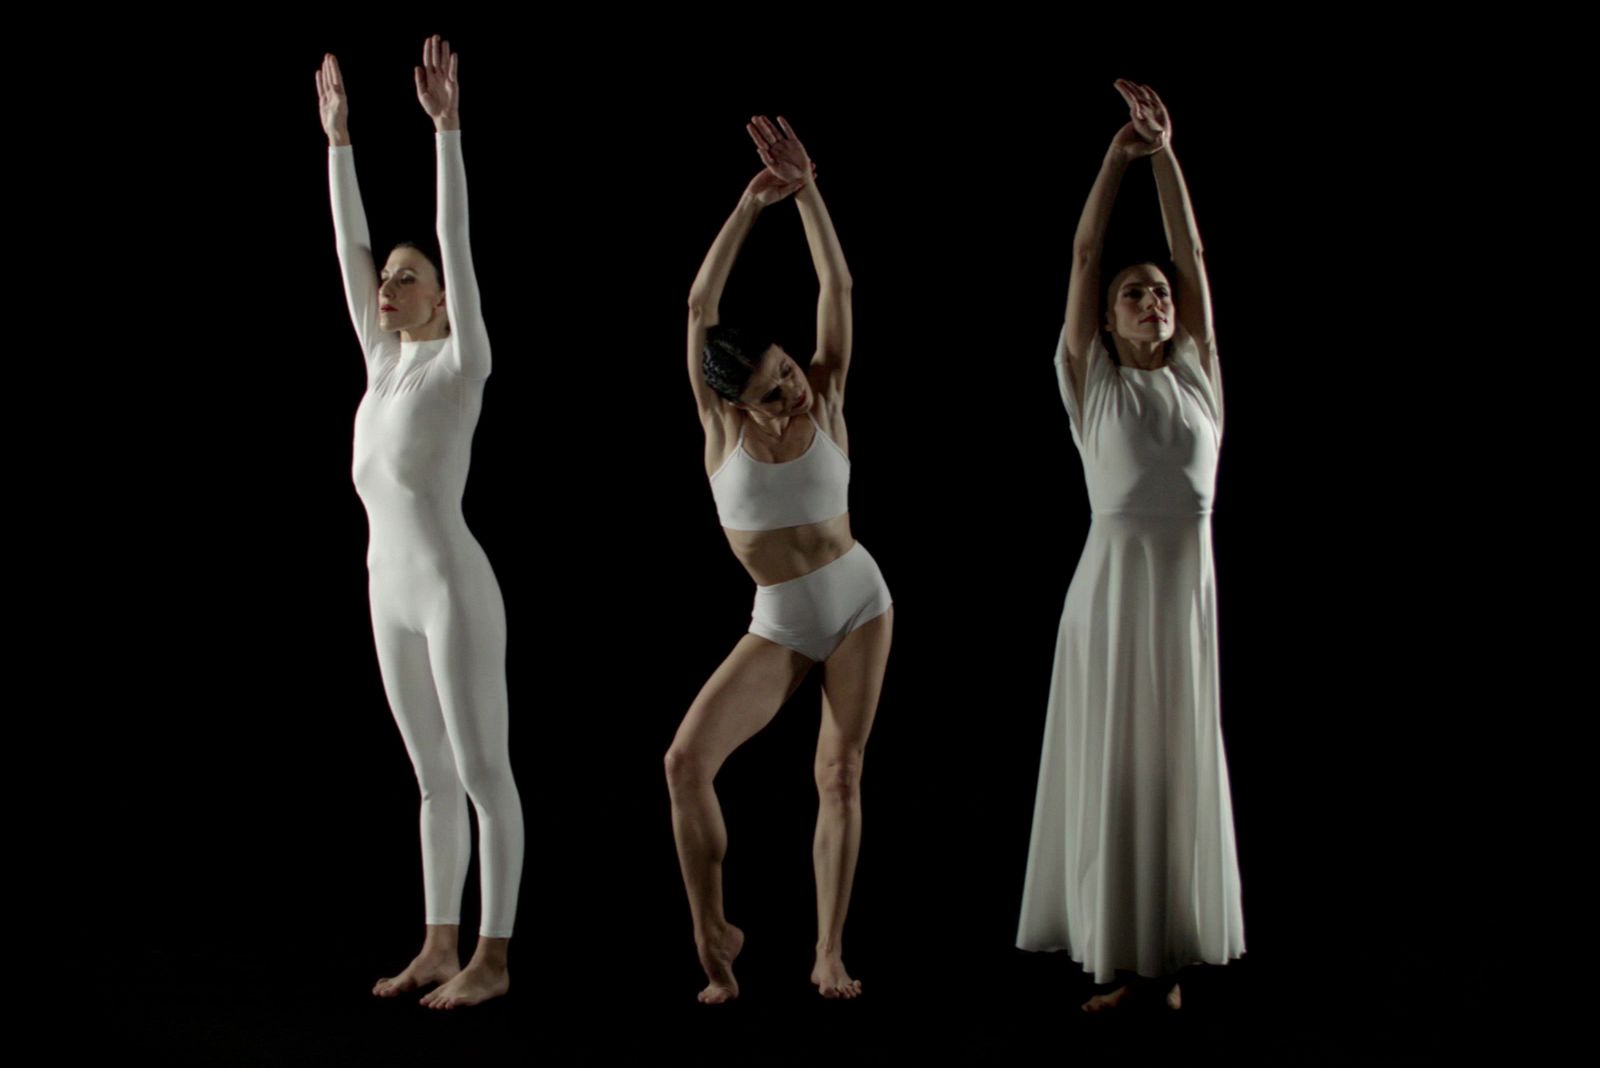 Recreación coreográfica de la técnica de la caída de Doris Humphrey ©FundacionTelefonica